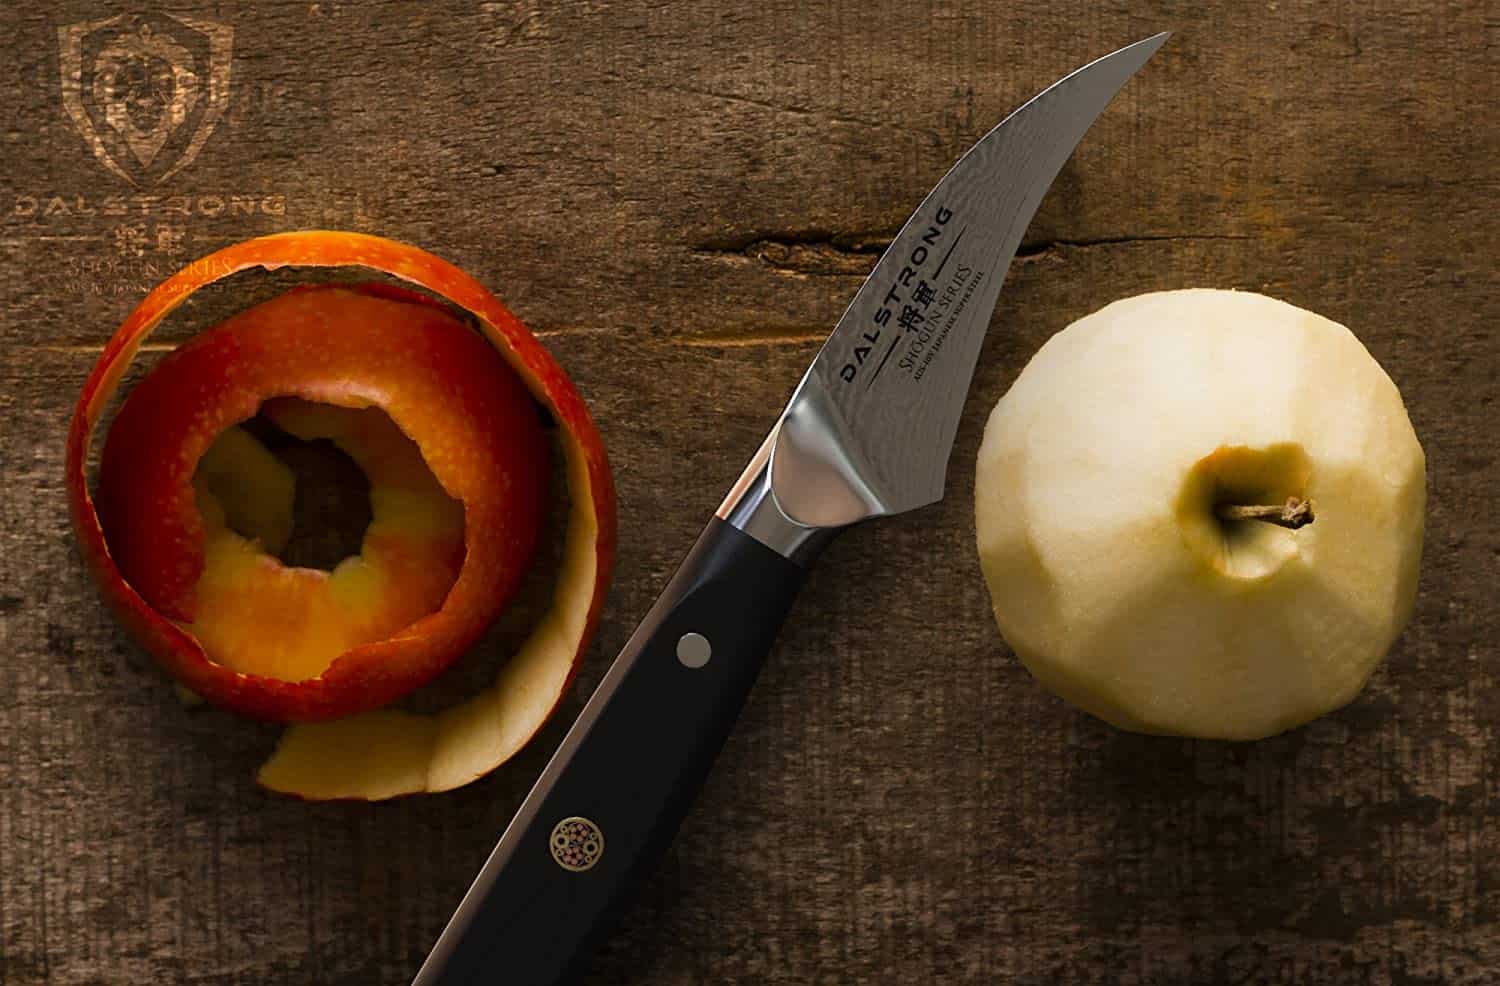 Mejor cuchillo pelador- DALSTRONG Tourne 3 con manzana